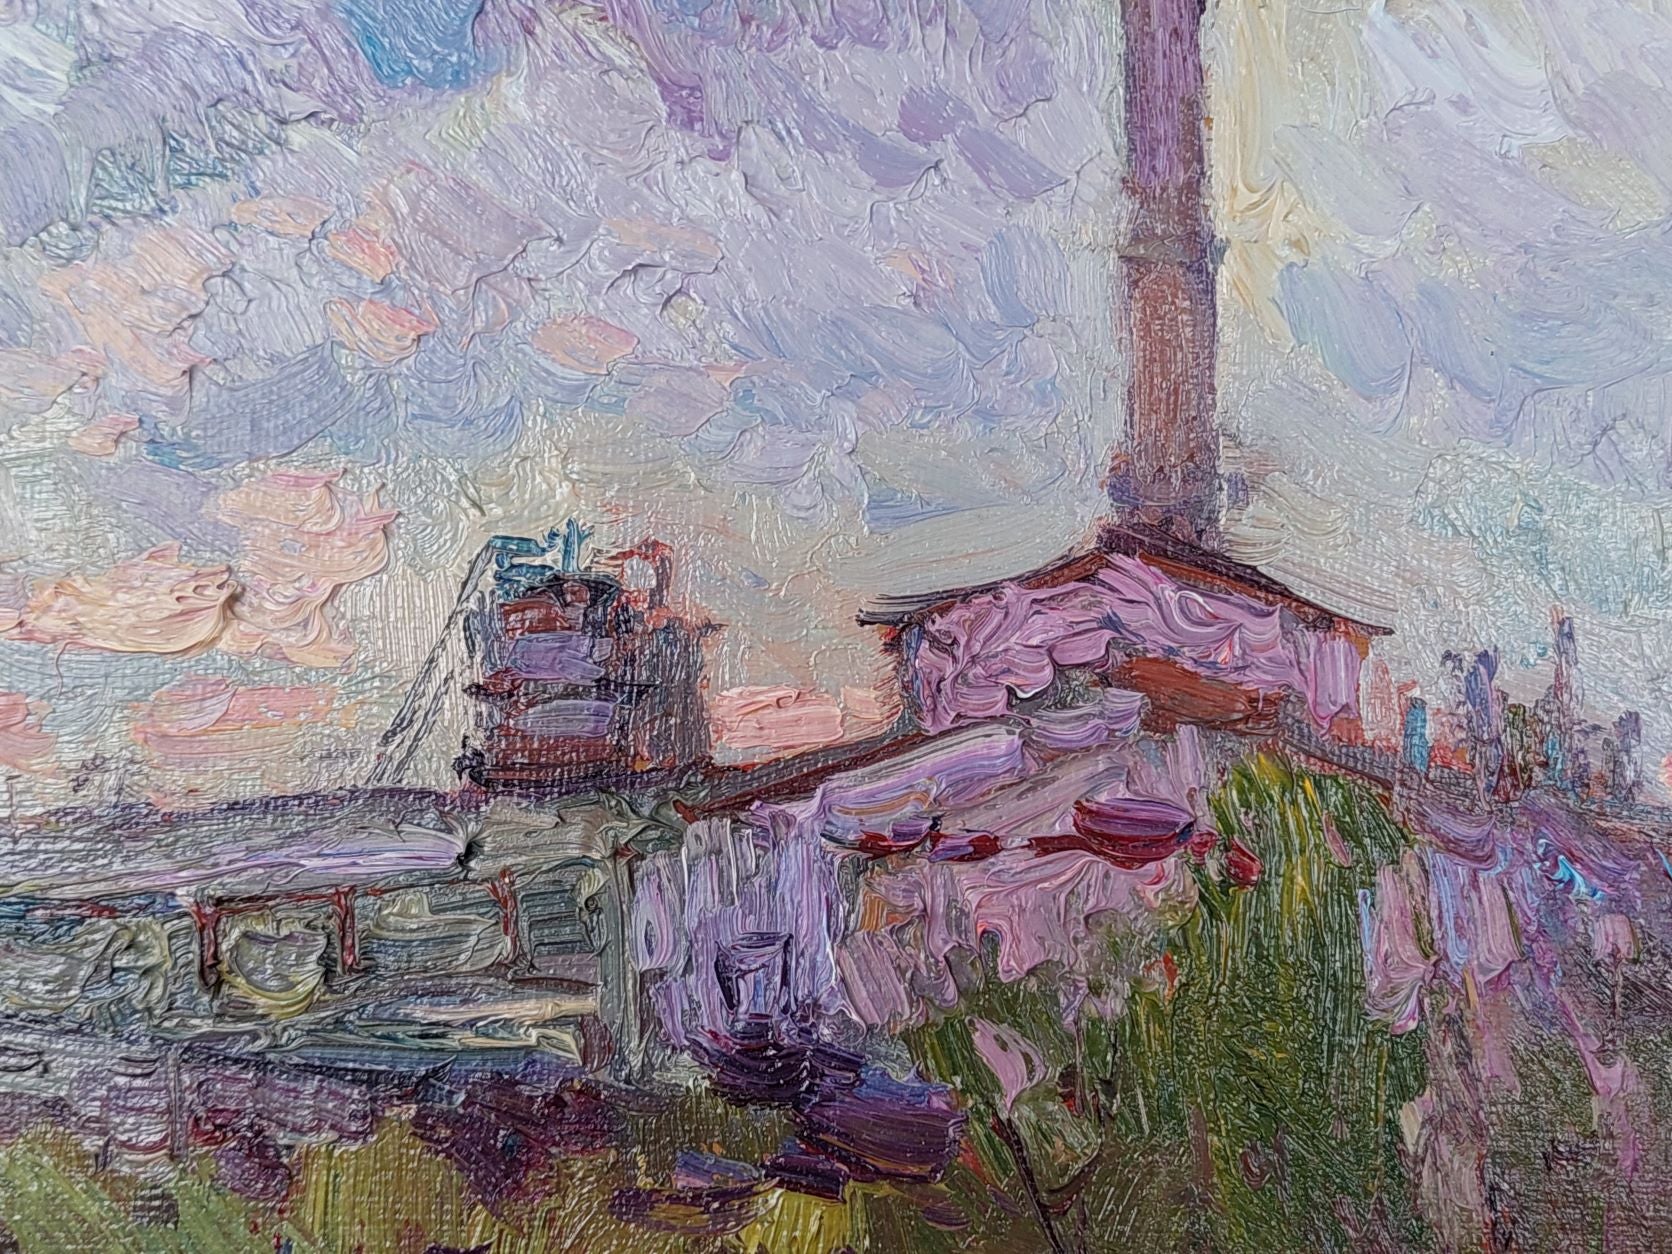 Evening (2014) by Oleksandr Khrapachov